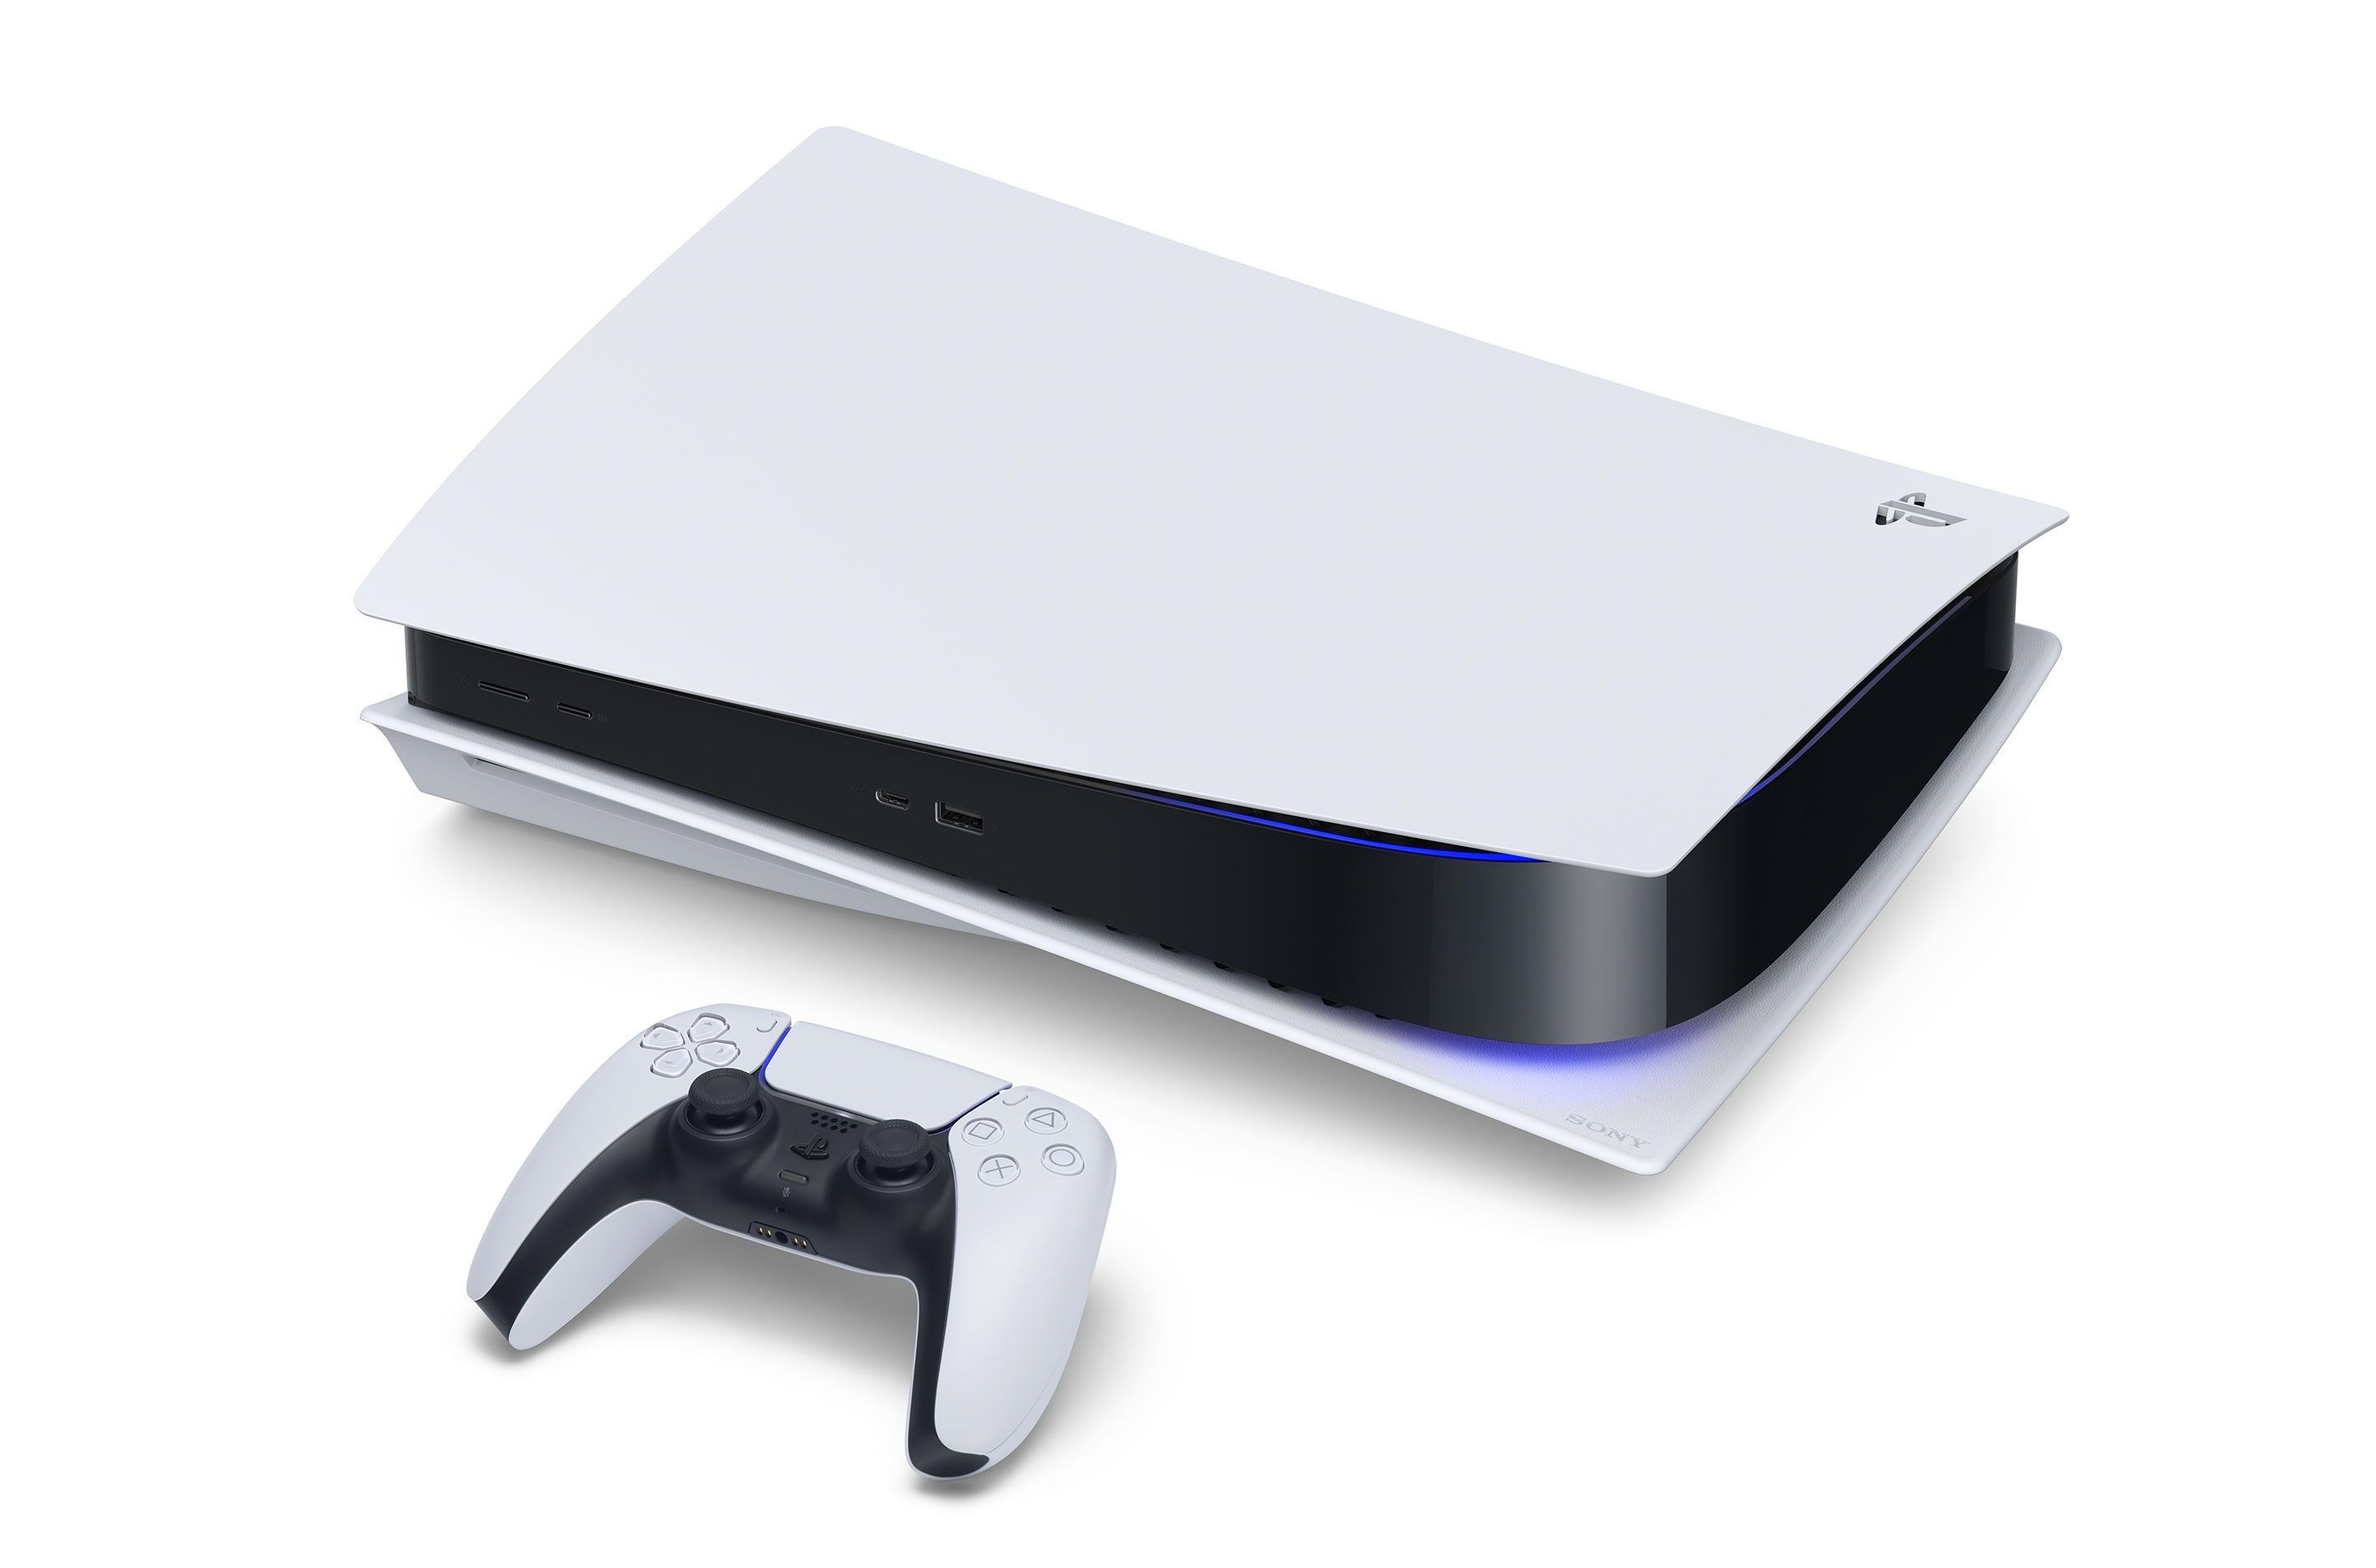 Analistlere göre yeni nesil konsol savaşının galibi PlayStation 5 olacak